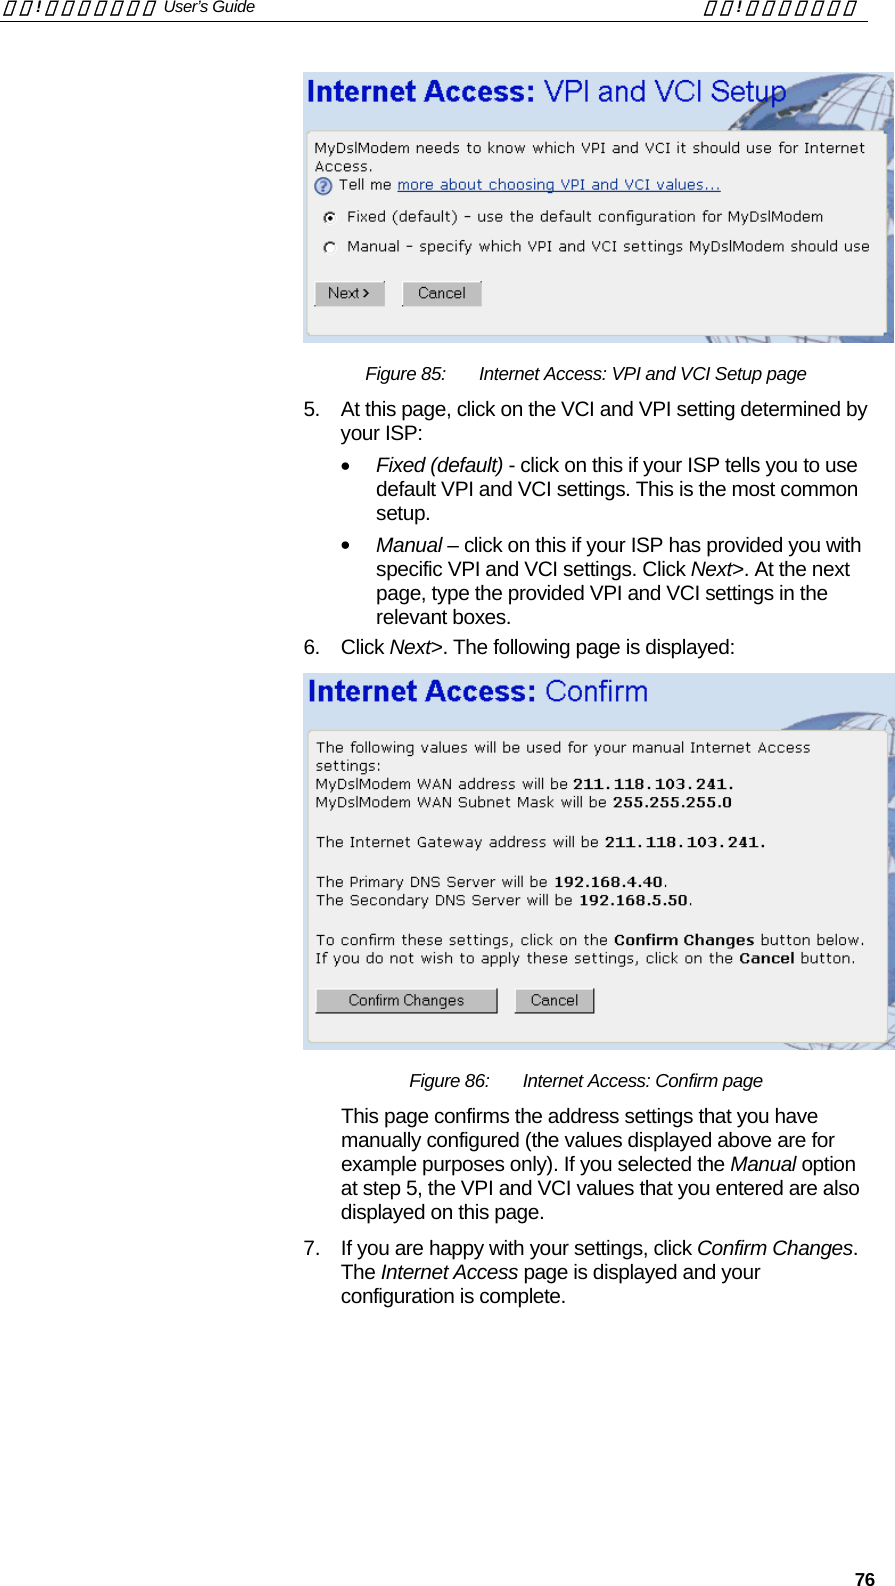 錯誤! 尚未定義樣式。 User’s Guide  錯誤! 尚未定義樣式。   76  Figure 85:  Internet Access: VPI and VCI Setup page 5.  At this page, click on the VCI and VPI setting determined by your ISP: •  Fixed (default) - click on this if your ISP tells you to use default VPI and VCI settings. This is the most common setup. •  Manual – click on this if your ISP has provided you with specific VPI and VCI settings. Click Next&gt;. At the next page, type the provided VPI and VCI settings in the relevant boxes. 6. Click Next&gt;. The following page is displayed:  Figure 86:  Internet Access: Confirm page This page confirms the address settings that you have manually configured (the values displayed above are for example purposes only). If you selected the Manual option at step 5, the VPI and VCI values that you entered are also displayed on this page. 7.  If you are happy with your settings, click Confirm Changes. The Internet Access page is displayed and your configuration is complete.